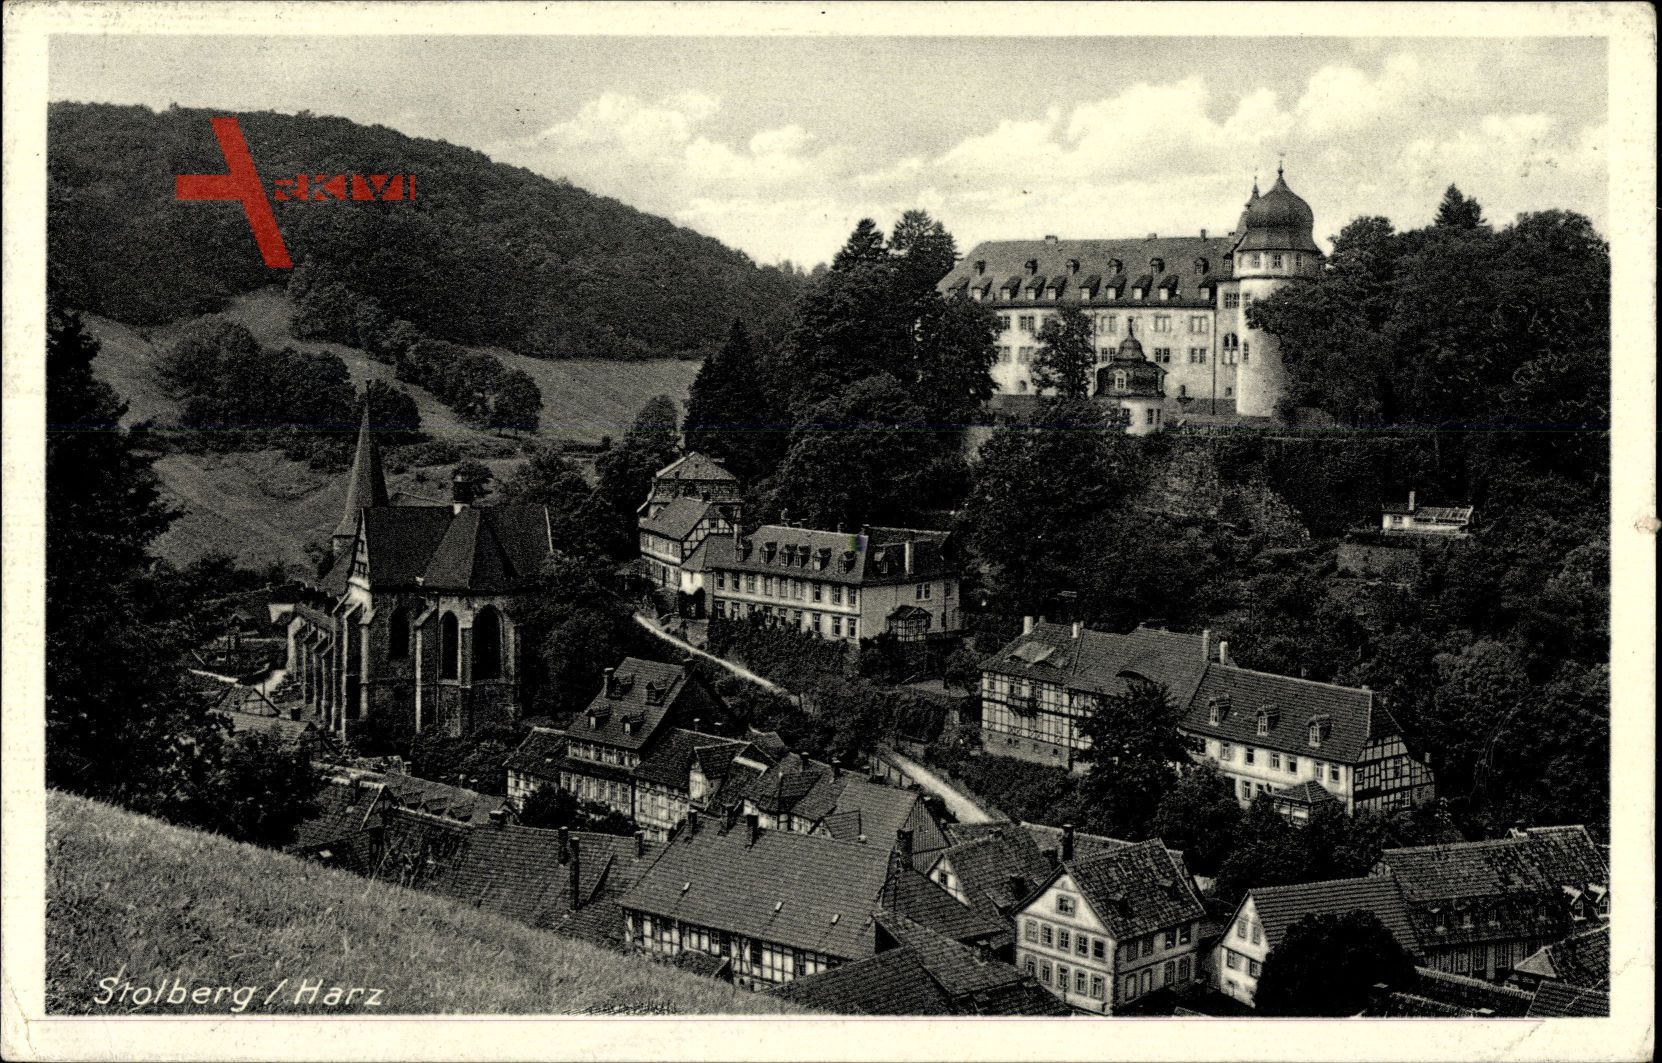 Stolberg Südharz, Blick auf den Ort und das Schloss, Kirche